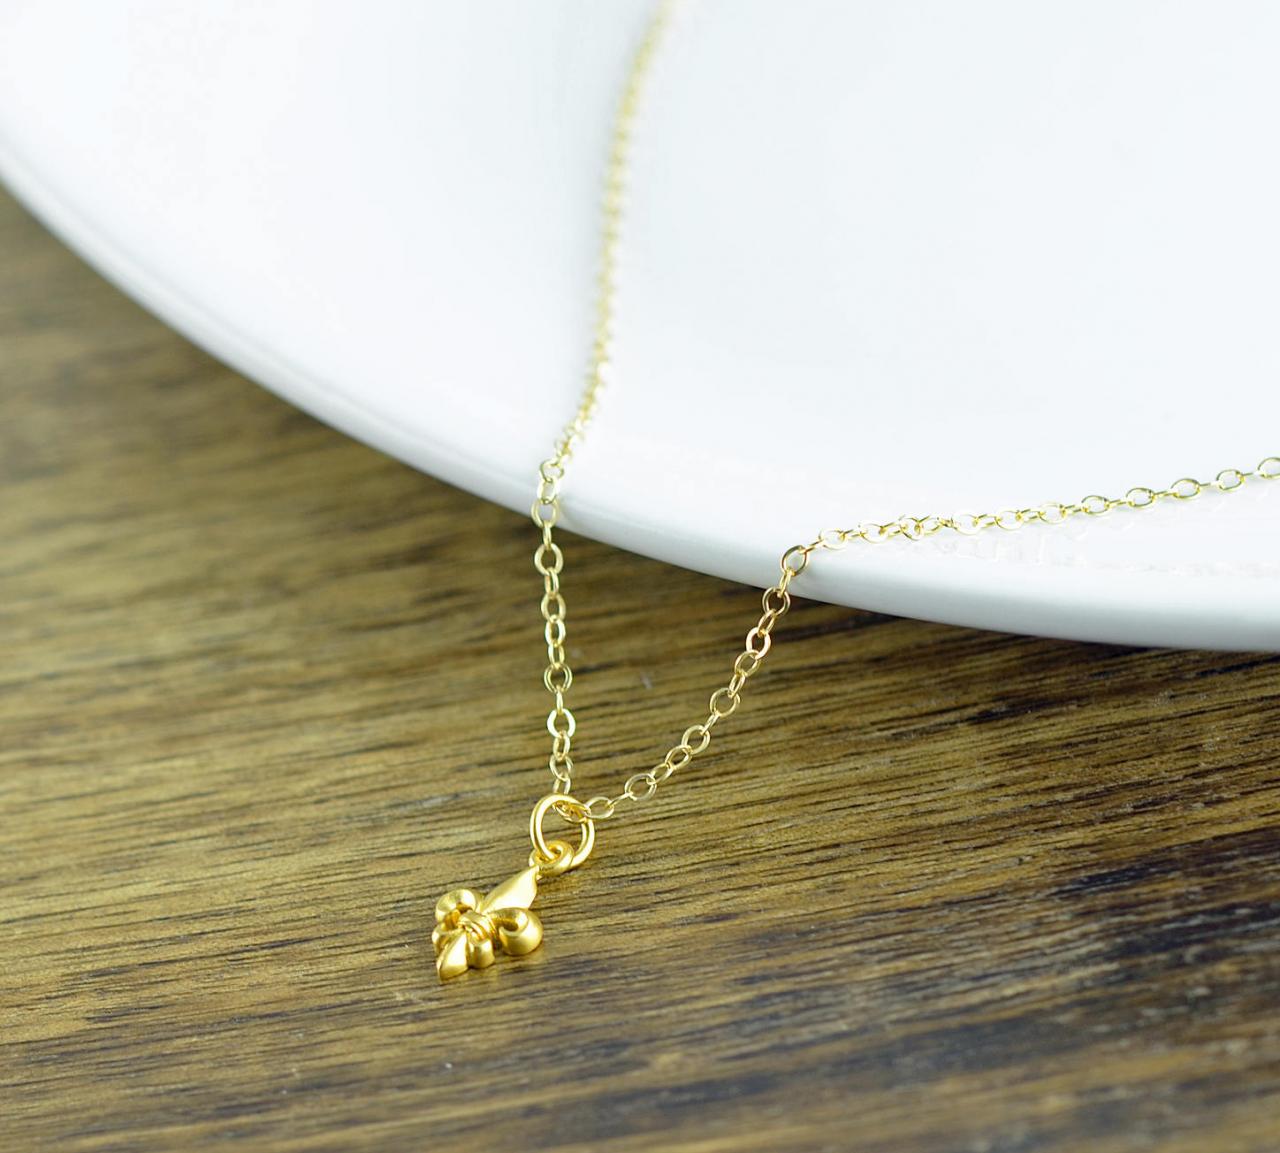 gold fleur de lis - fleur de lis necklace - fleur de lis charm - tiny charm necklace - feur de lis jewelry, gold fleur de lis necklace